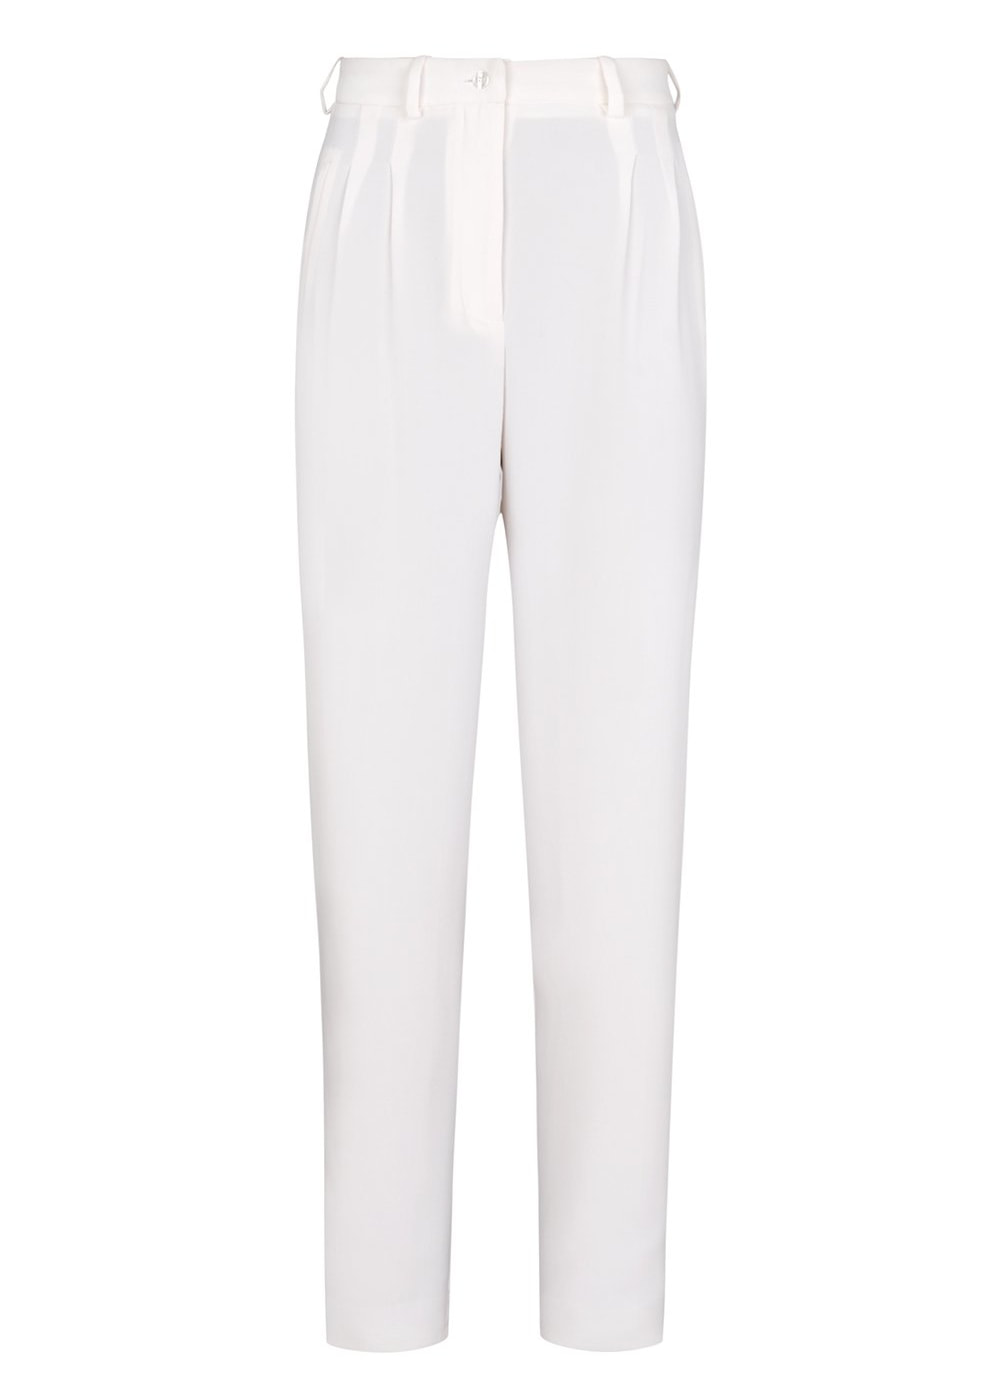 Bleis Madrid crepe trouser in white